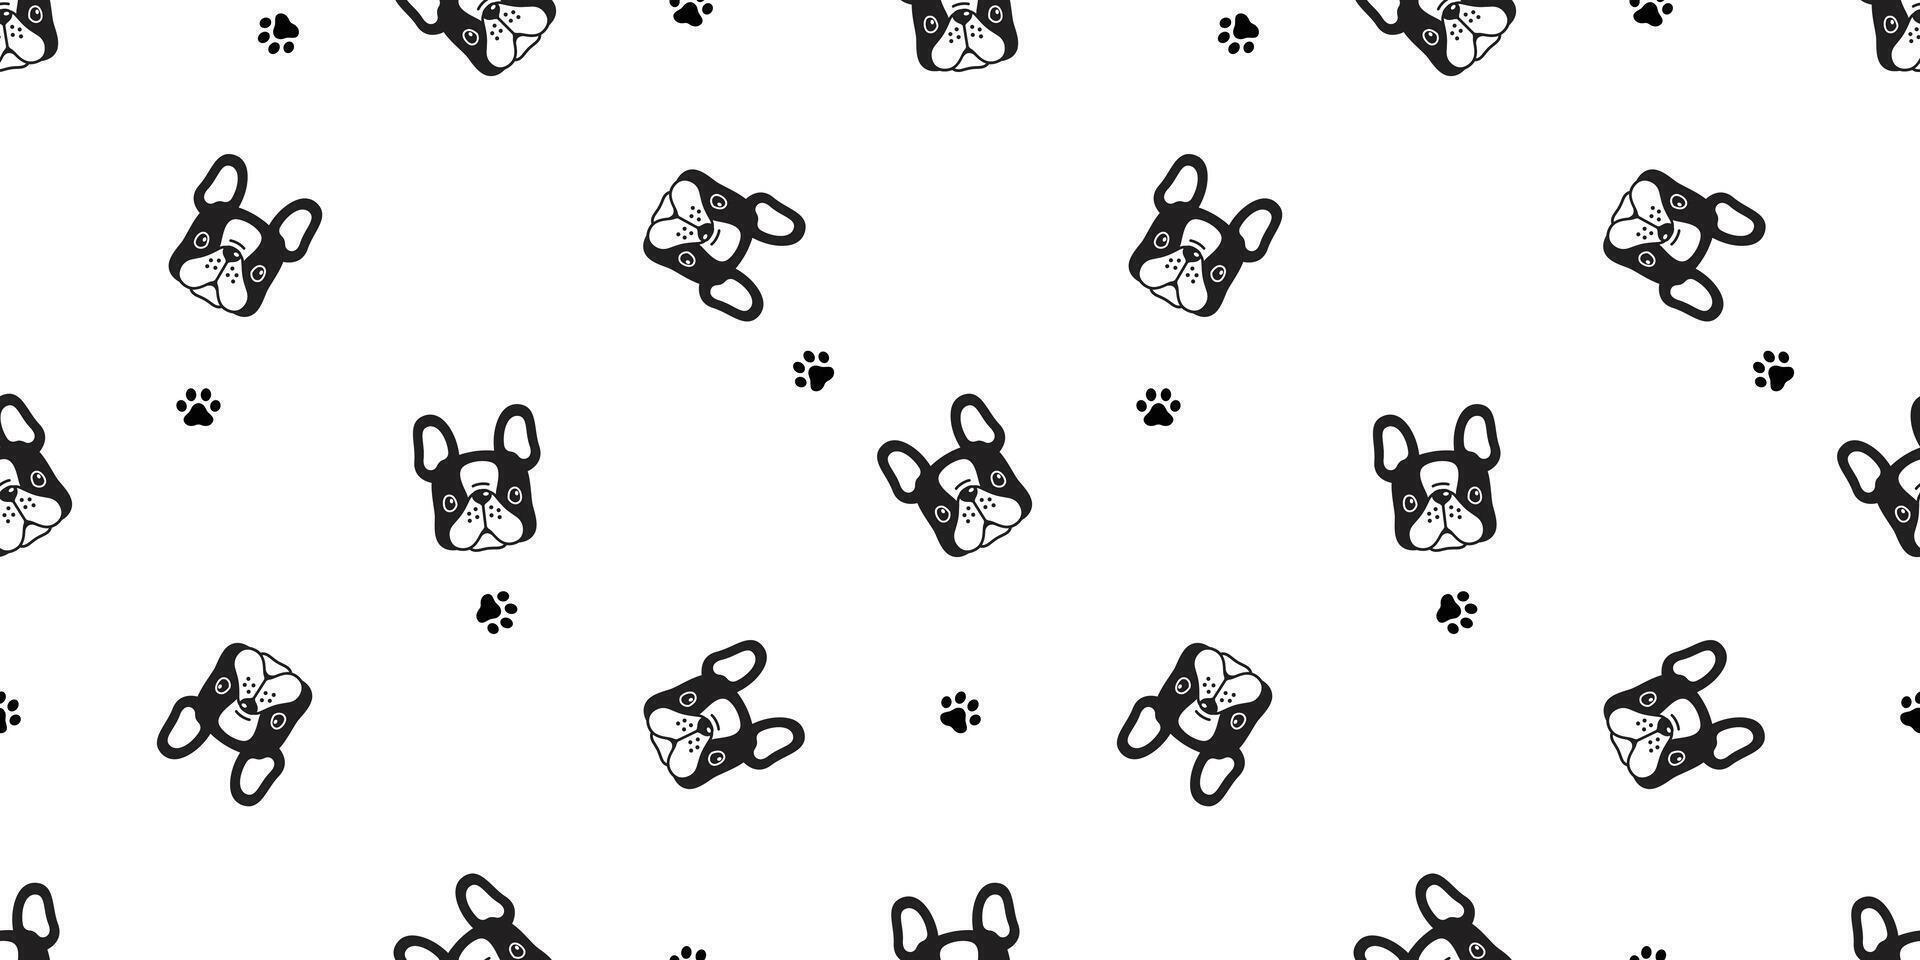 hond naadloos patroon Frans bulldog poot voetafdruk vector gezicht hoofd puppy huisdier dier sjaal geïsoleerd tegel achtergrond herhaling behang tekenfilm illustratie tekening ontwerp